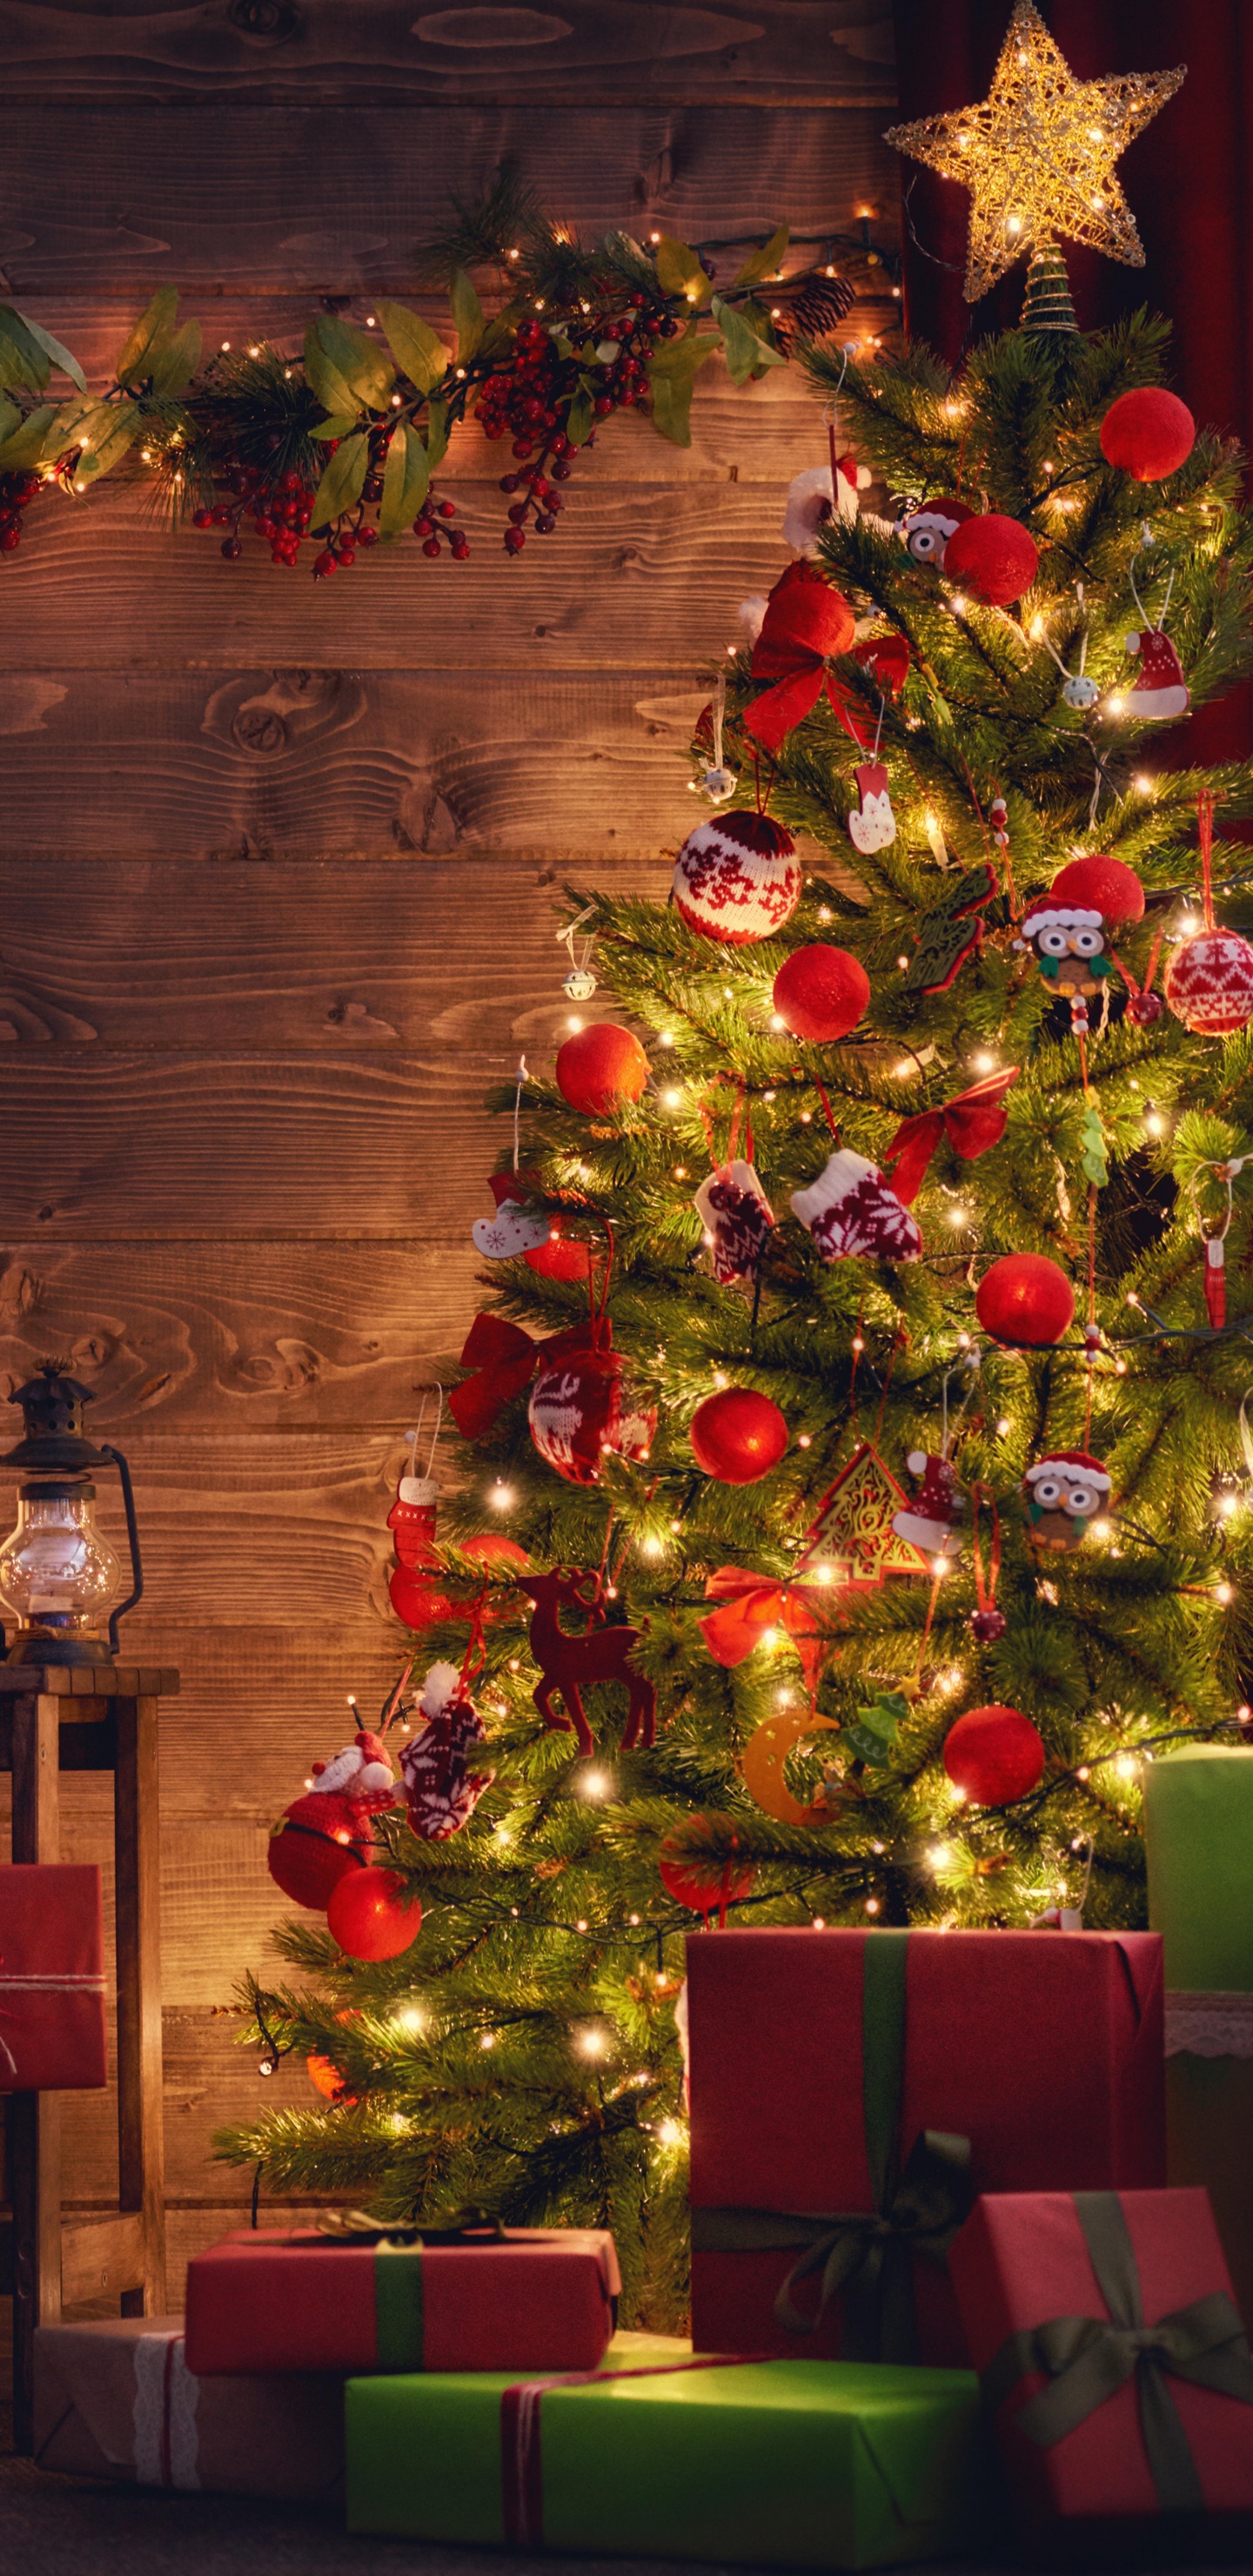 圣诞树, 圣诞节那天, 圣诞装饰, 圣诞节, 圣诞彩灯 壁纸 1440x2960 允许